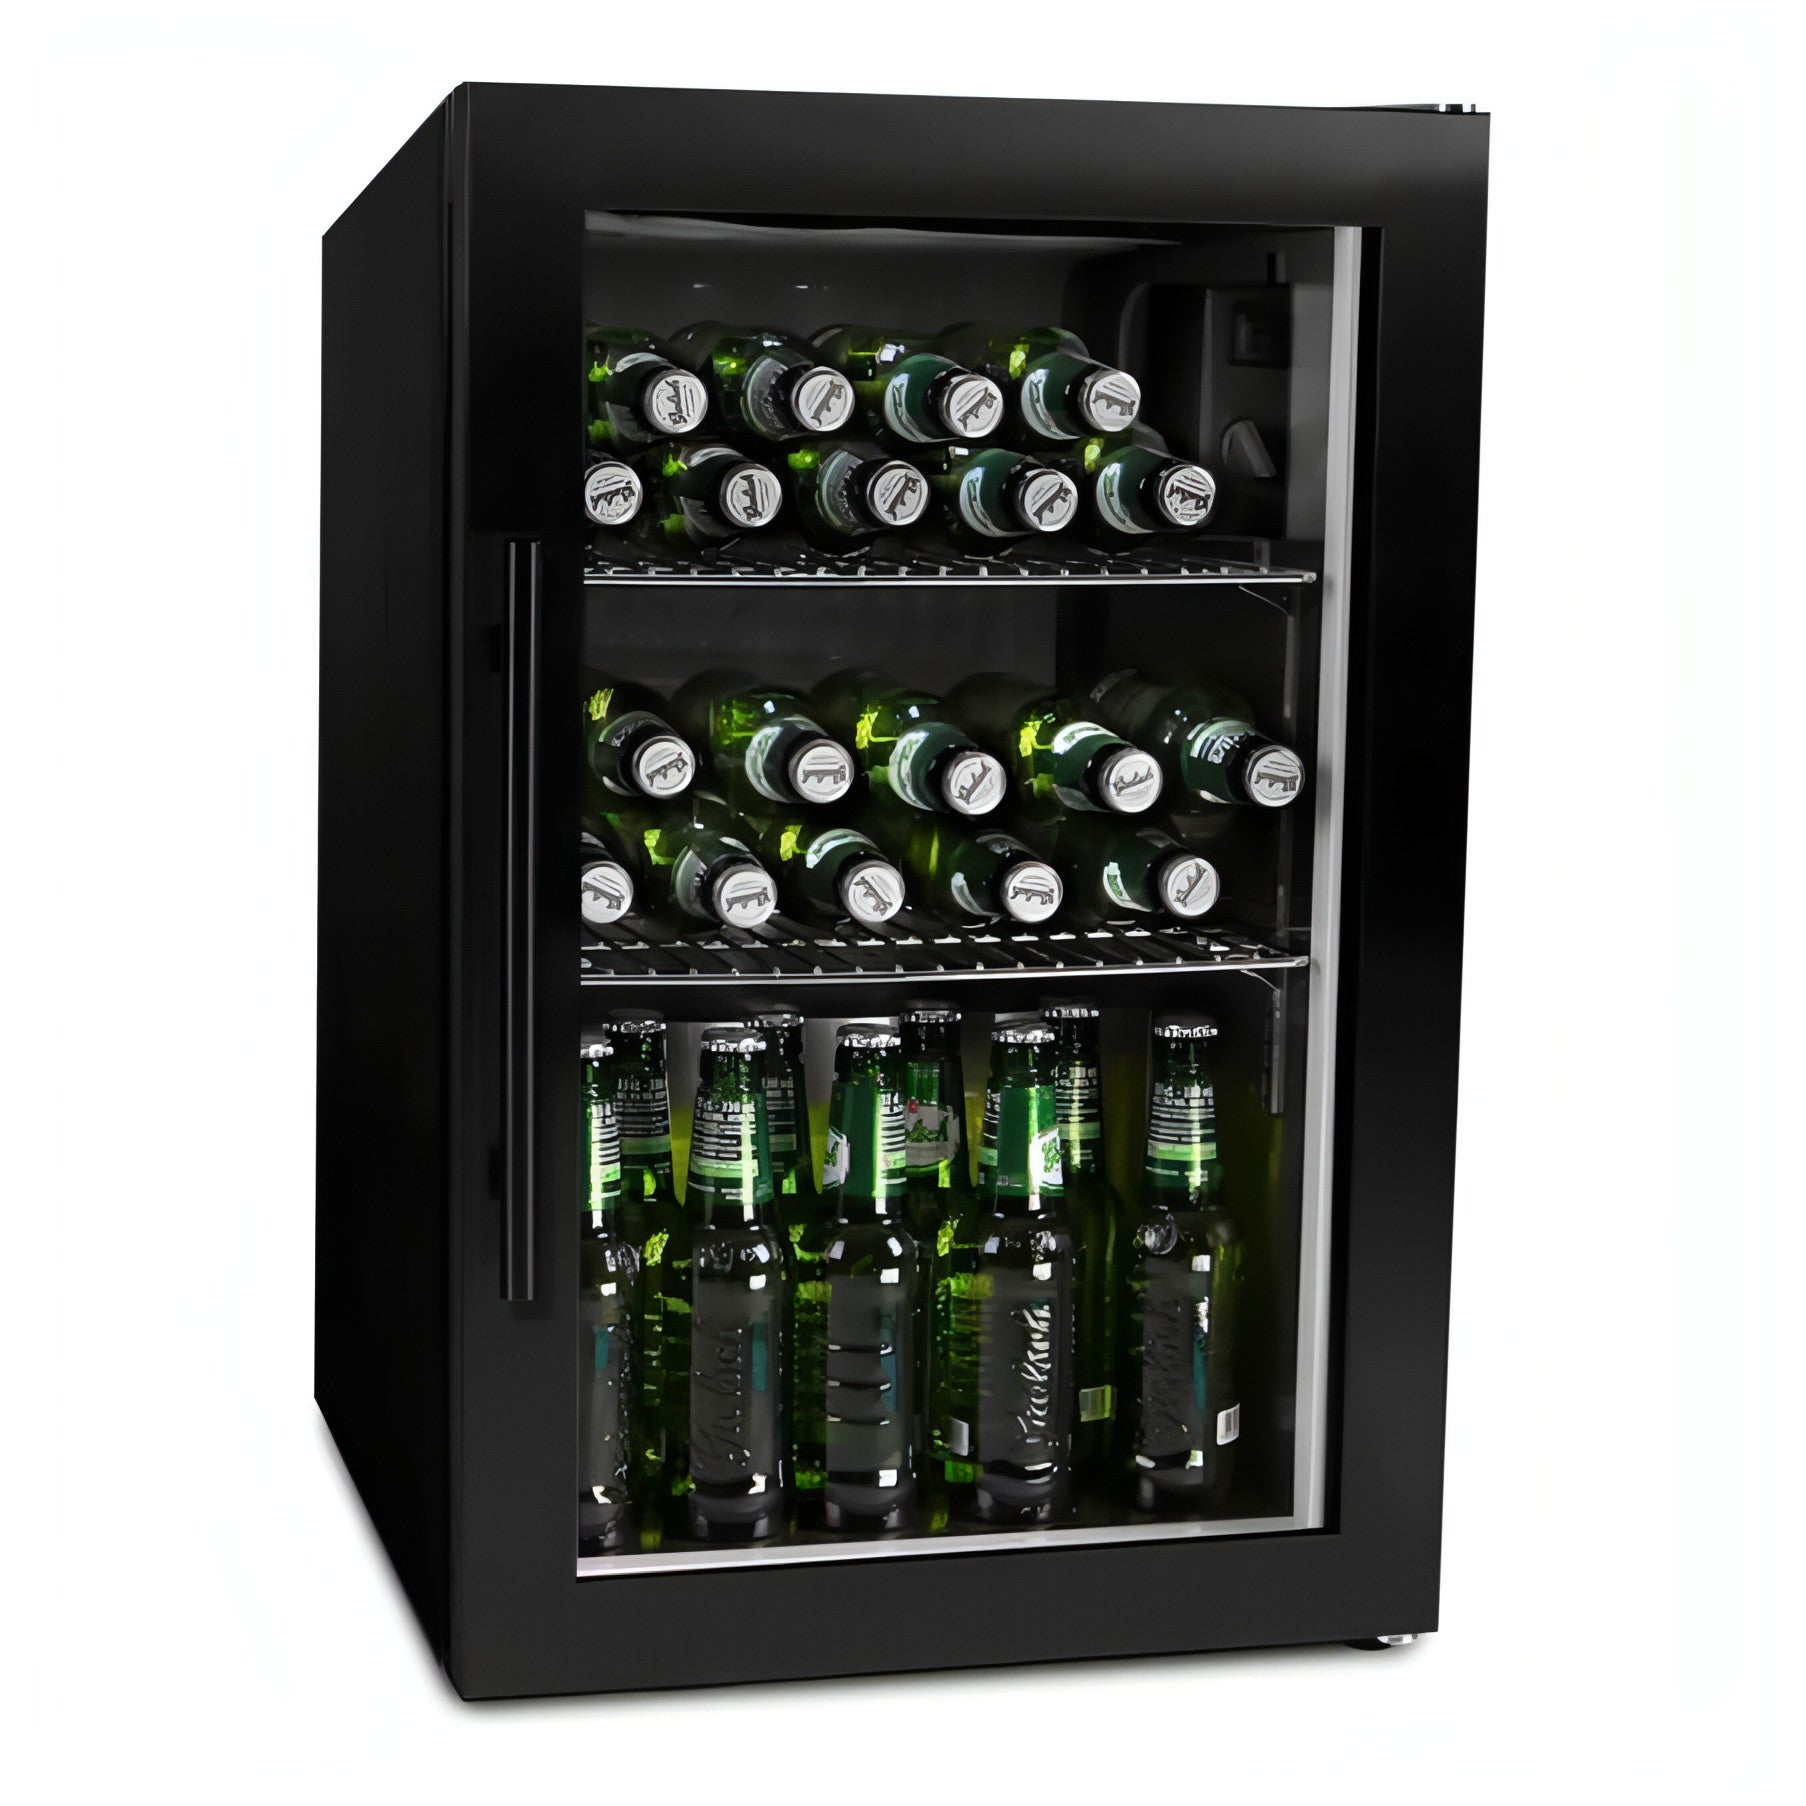 Cavin - Freestanding Beer Cooler - Arctic Collection 63 - Black